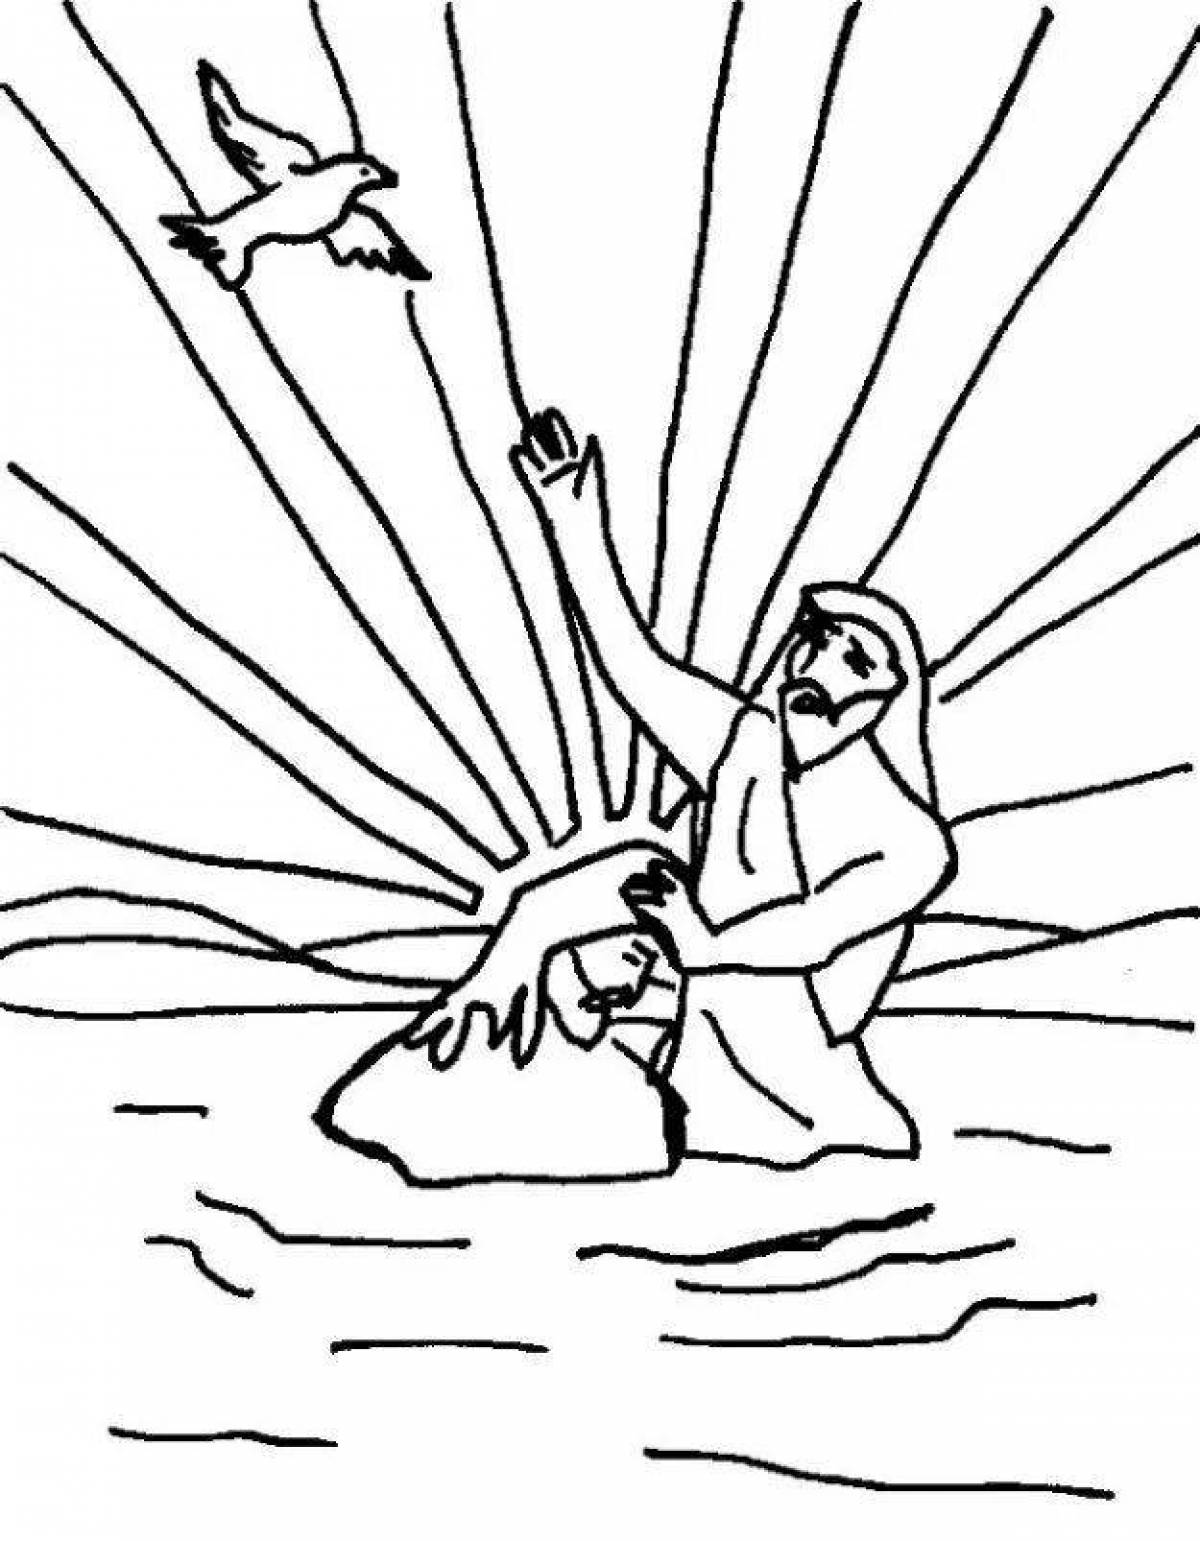 Светящаяся раскраска крещение для православных детей